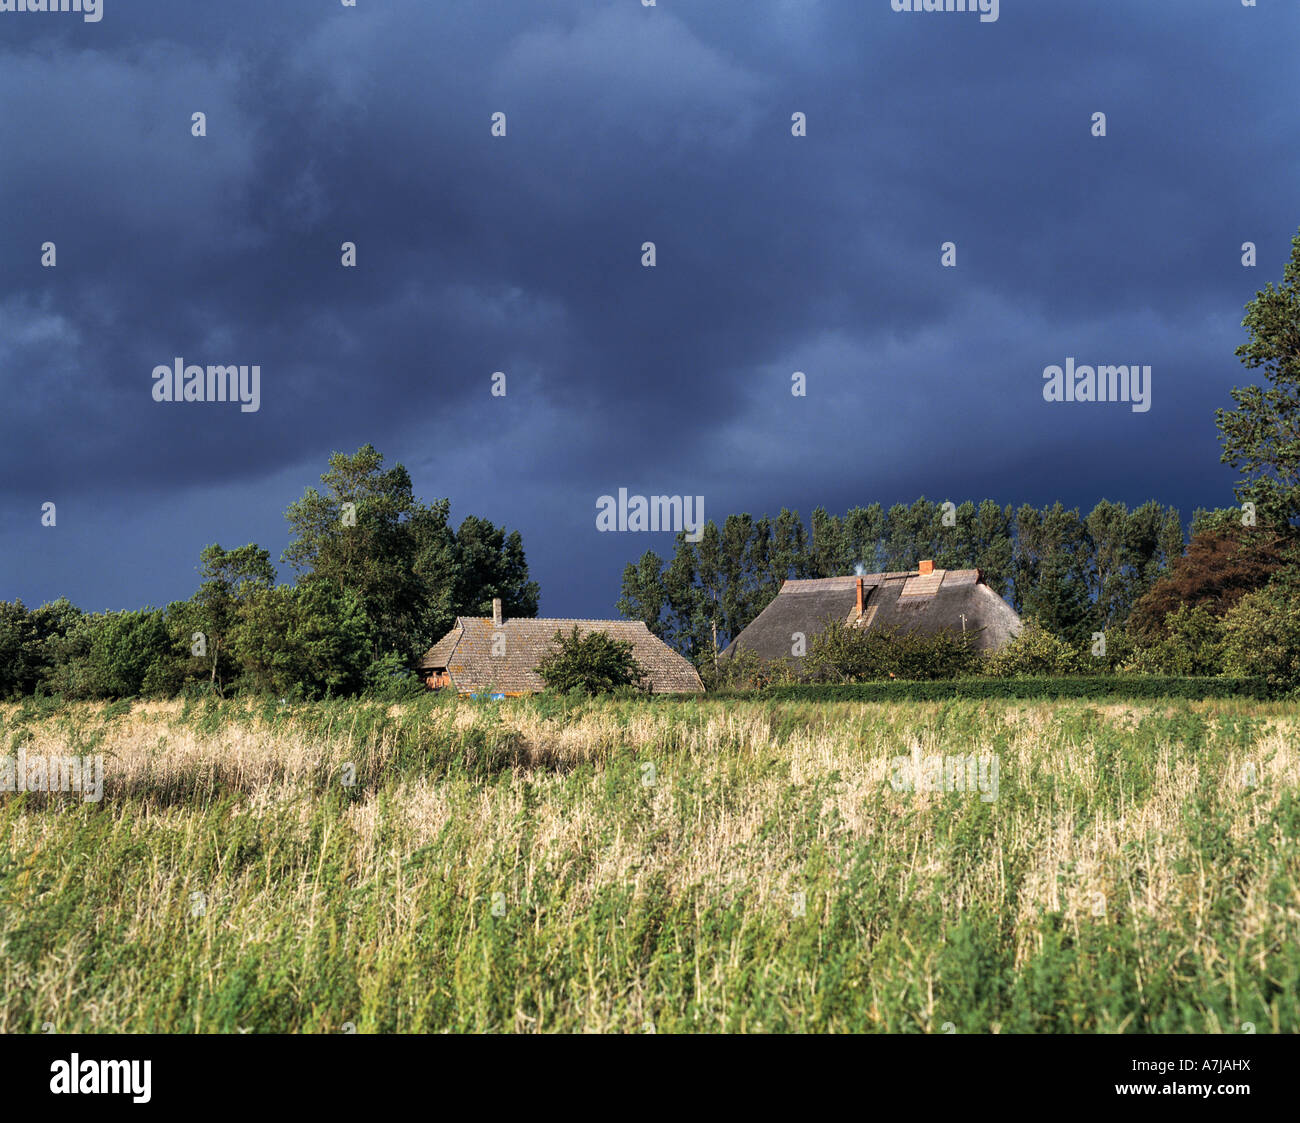 dunkle Gewitterwolken ueber zwei Bauernhaeusern in Kuehlungsborn an der Ostsee in Mecklenburg-Vorpommern Stock Photo